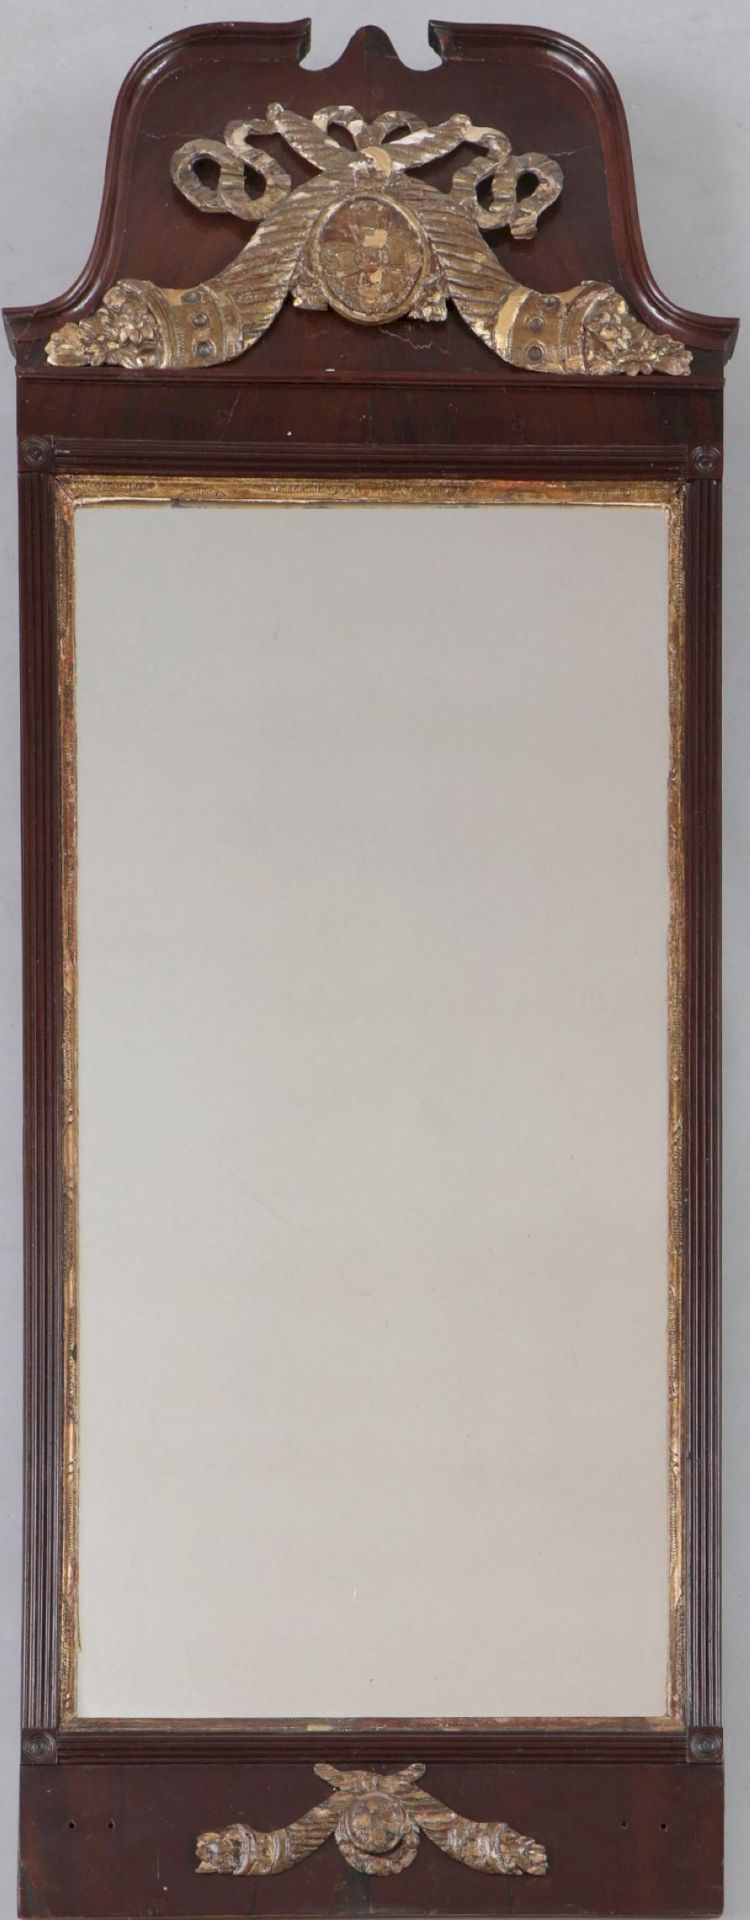 Trumeau-Wandspiegel des 18. Jahrhunderts